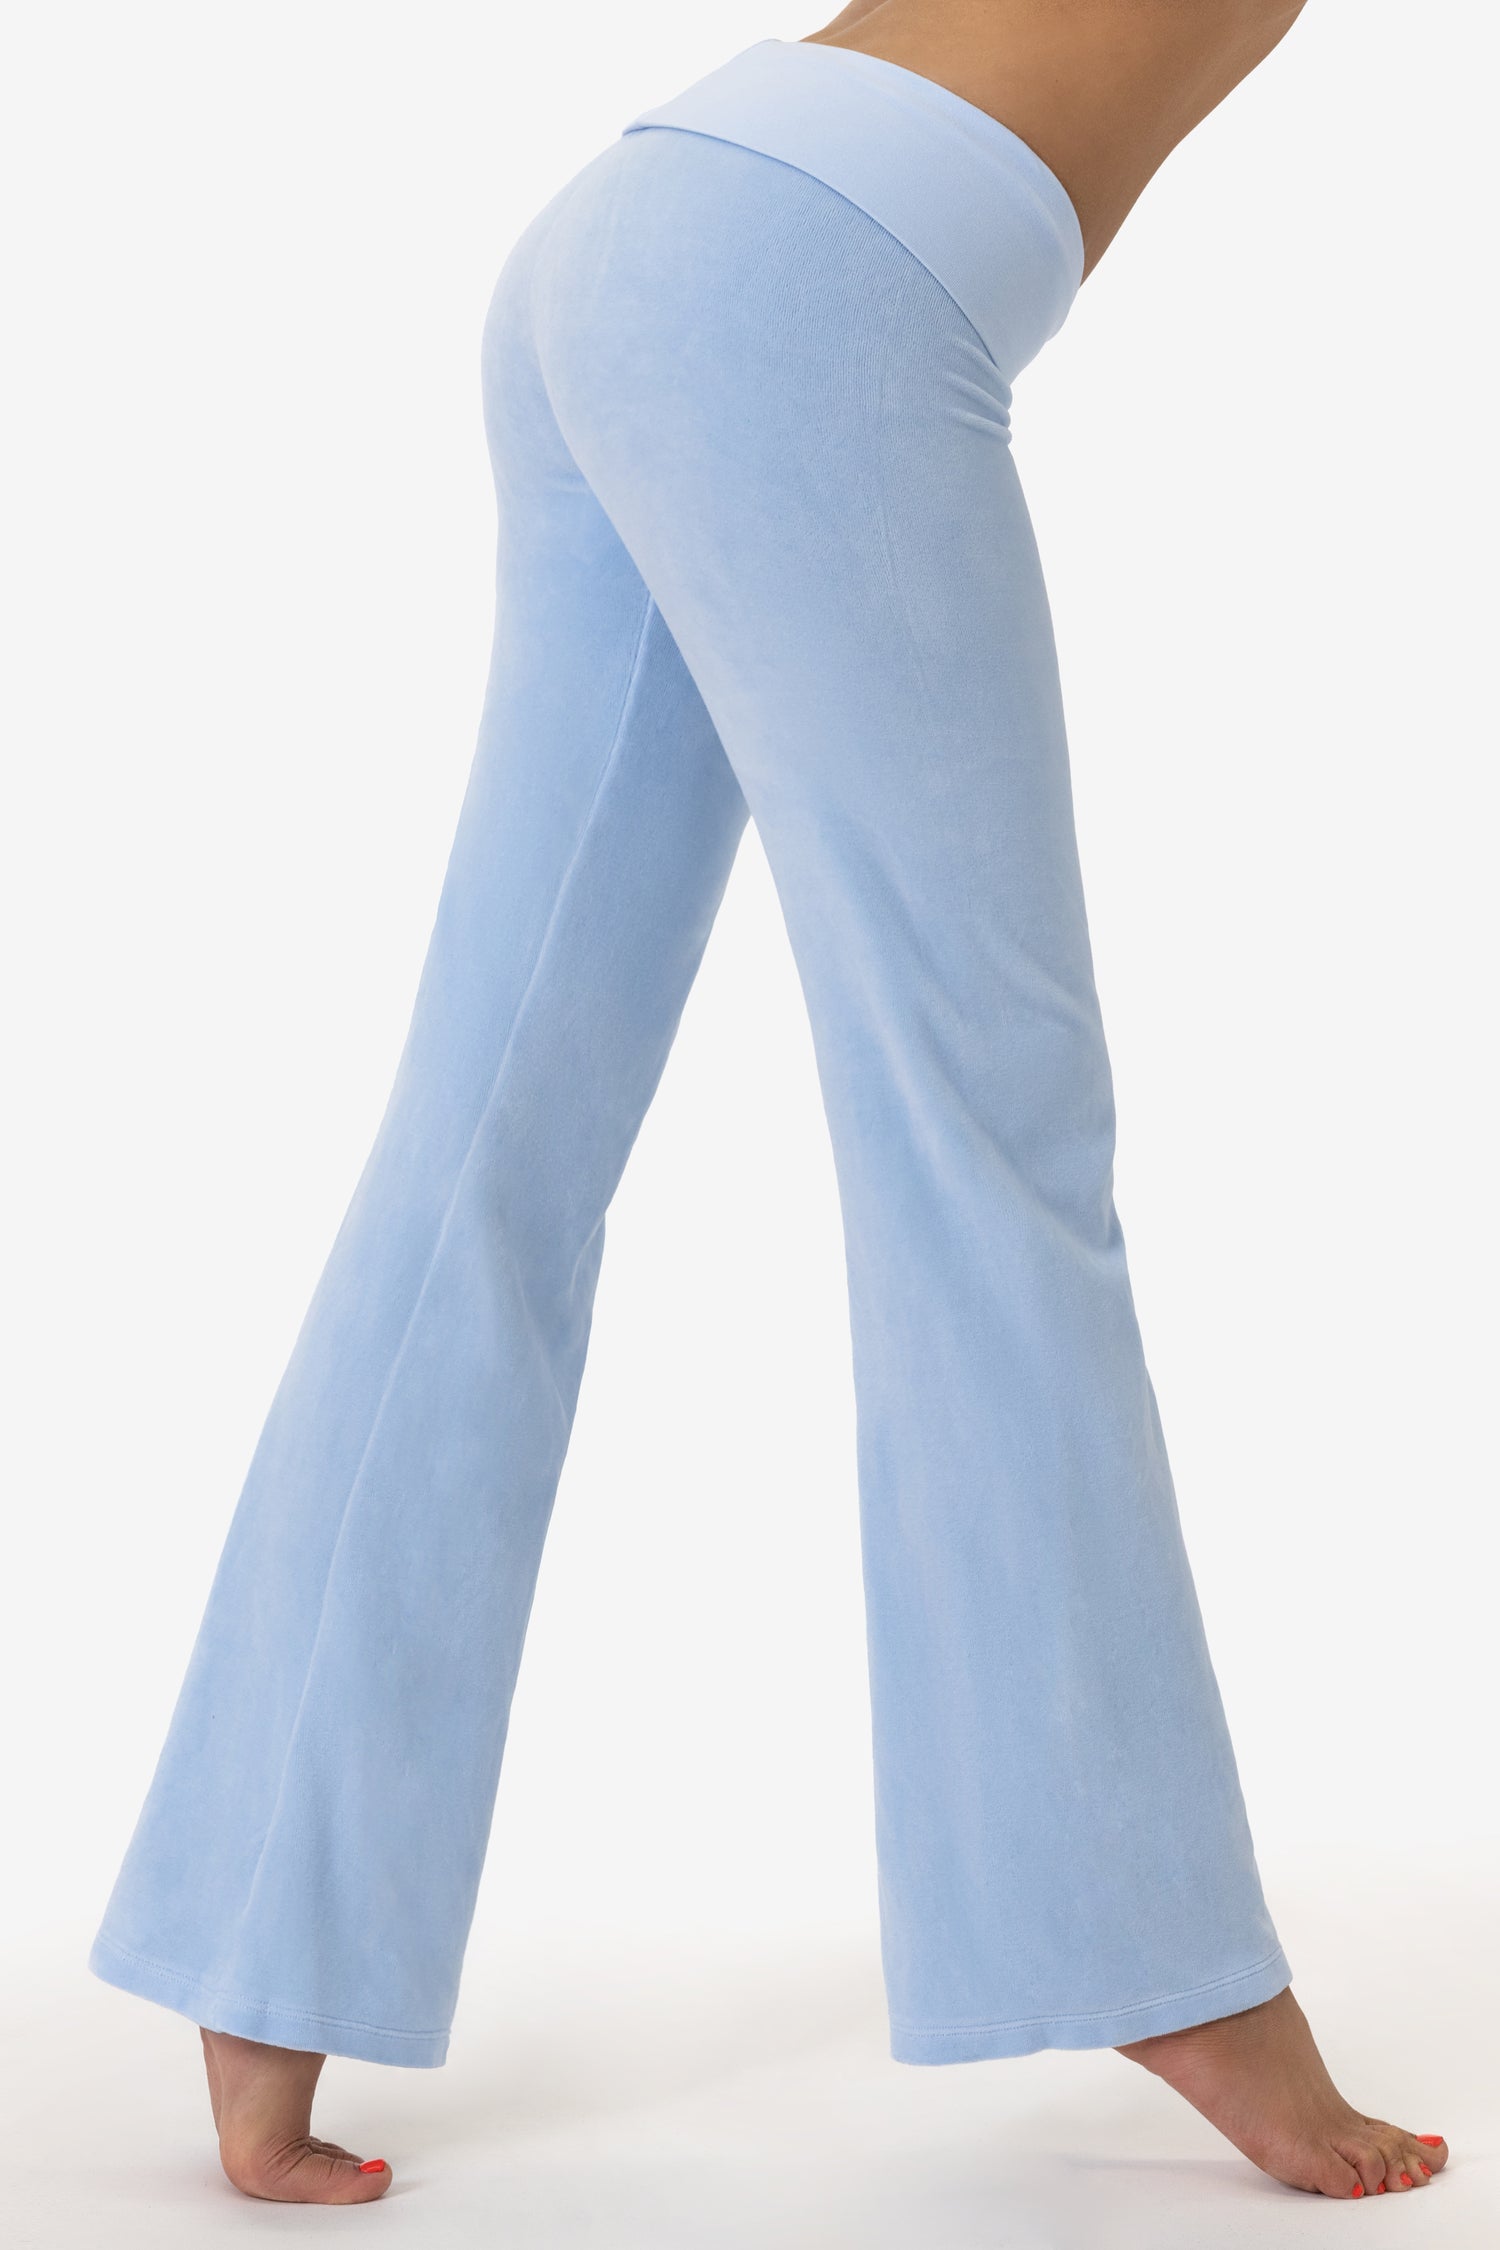 Devi Yoga Pants + Pigment Wave Sculpt Tank + Breezie Regal Plum WUC + More  - Agent Athletica